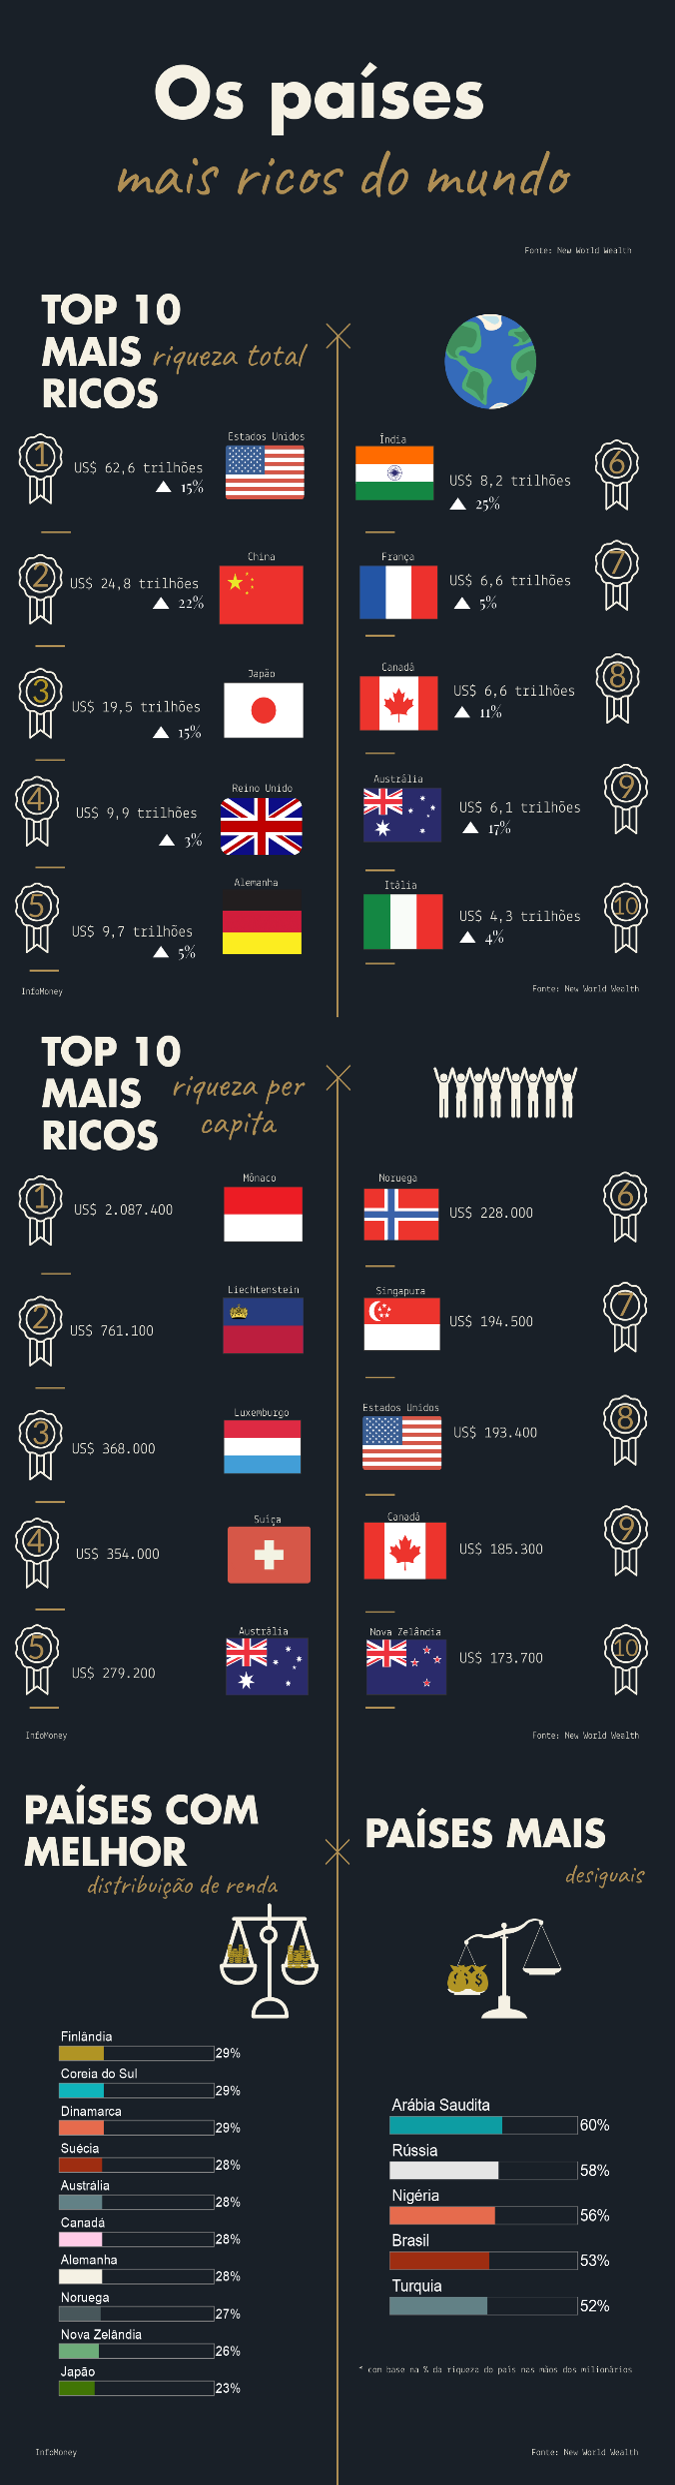 Dos 20 países mais ricos do mundo, 93% têm os jogos legalizados